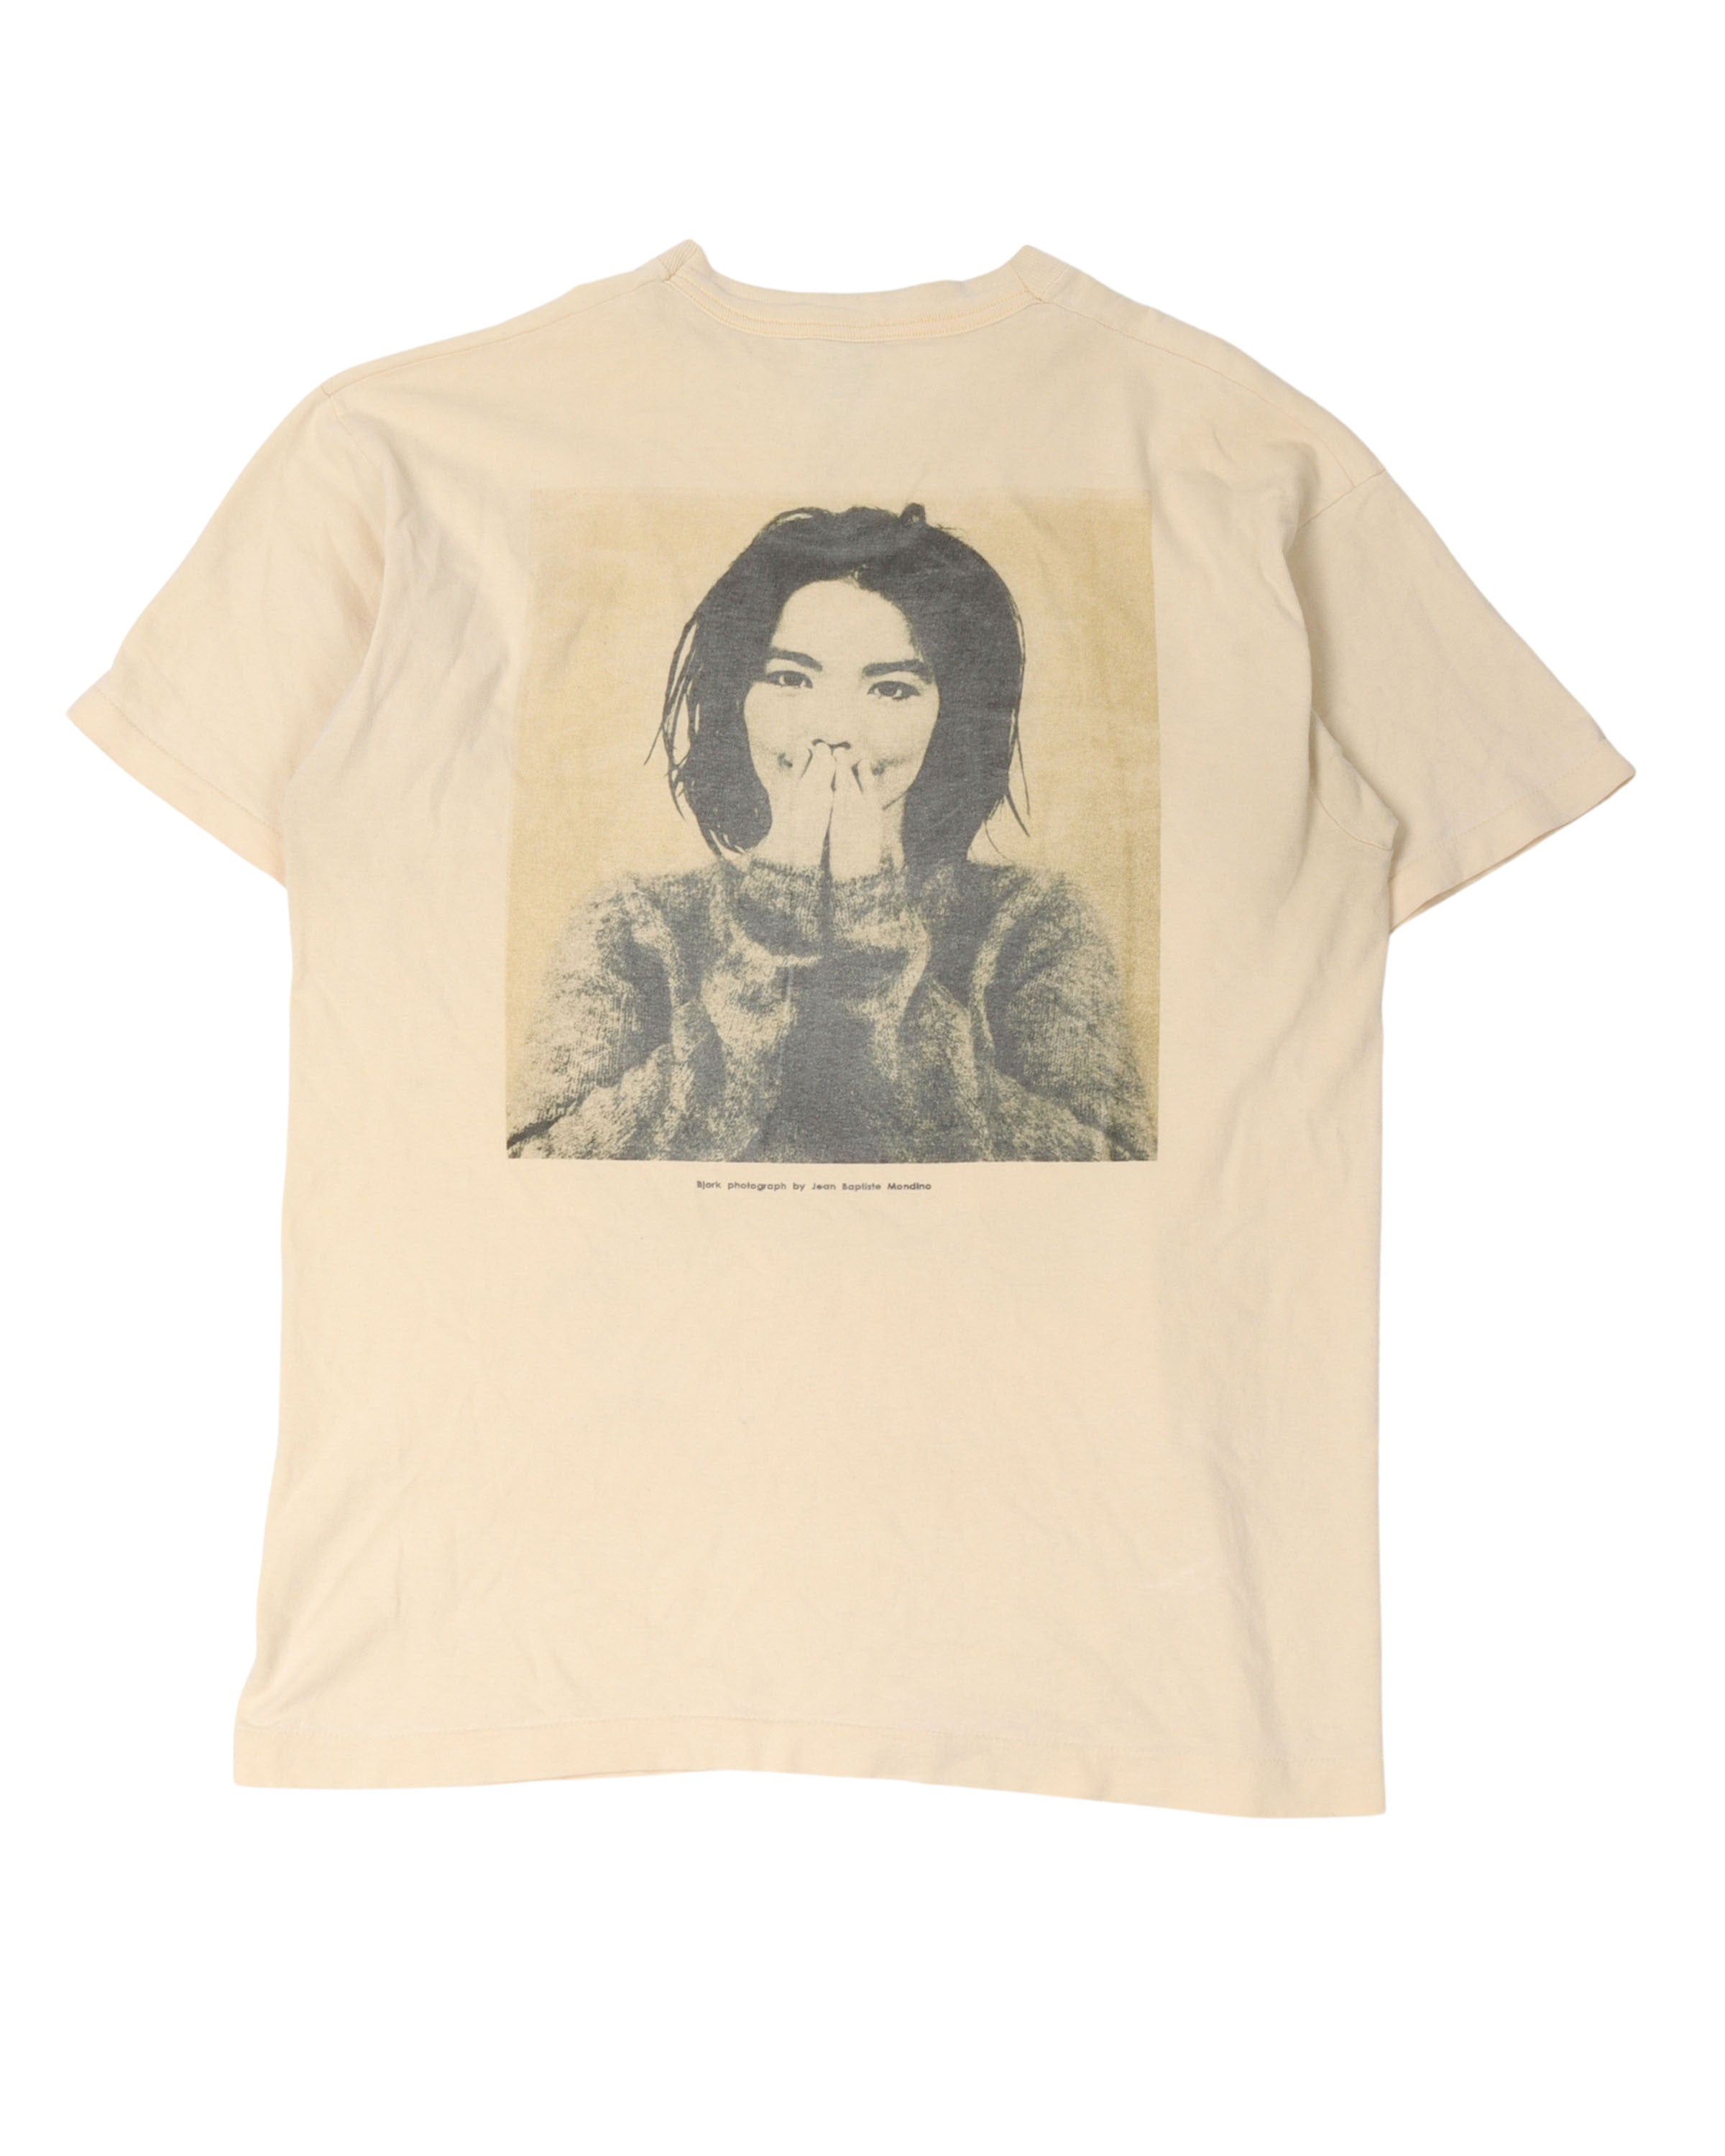 Björk by Jean-Baptiste Mondino T-Shirt